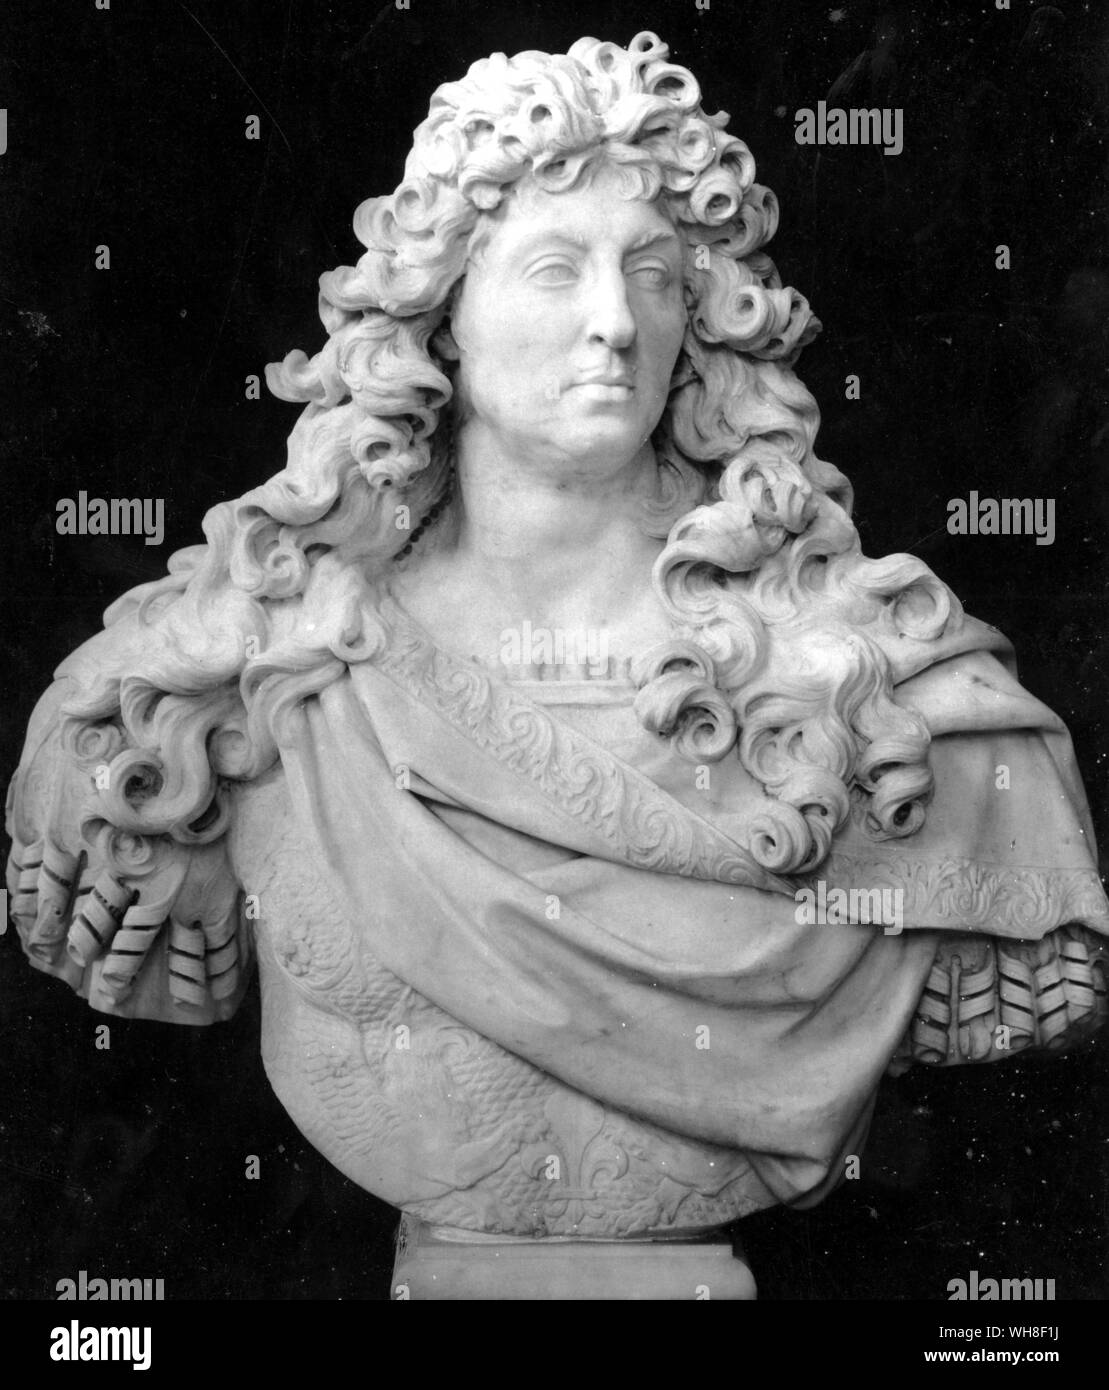 König Ludwig XIV. von Frankreich, der Sonnenkönig, (1638-1715), regierte 1643-1715. Seine Herrschaft in Frankreich war die längste in der europäischen Geschichte und fiel mit der Herrlichkeit, die Jahre der französischen Monarchie. Der Sonnenkönig von Nancy Mitford.. Stockfoto